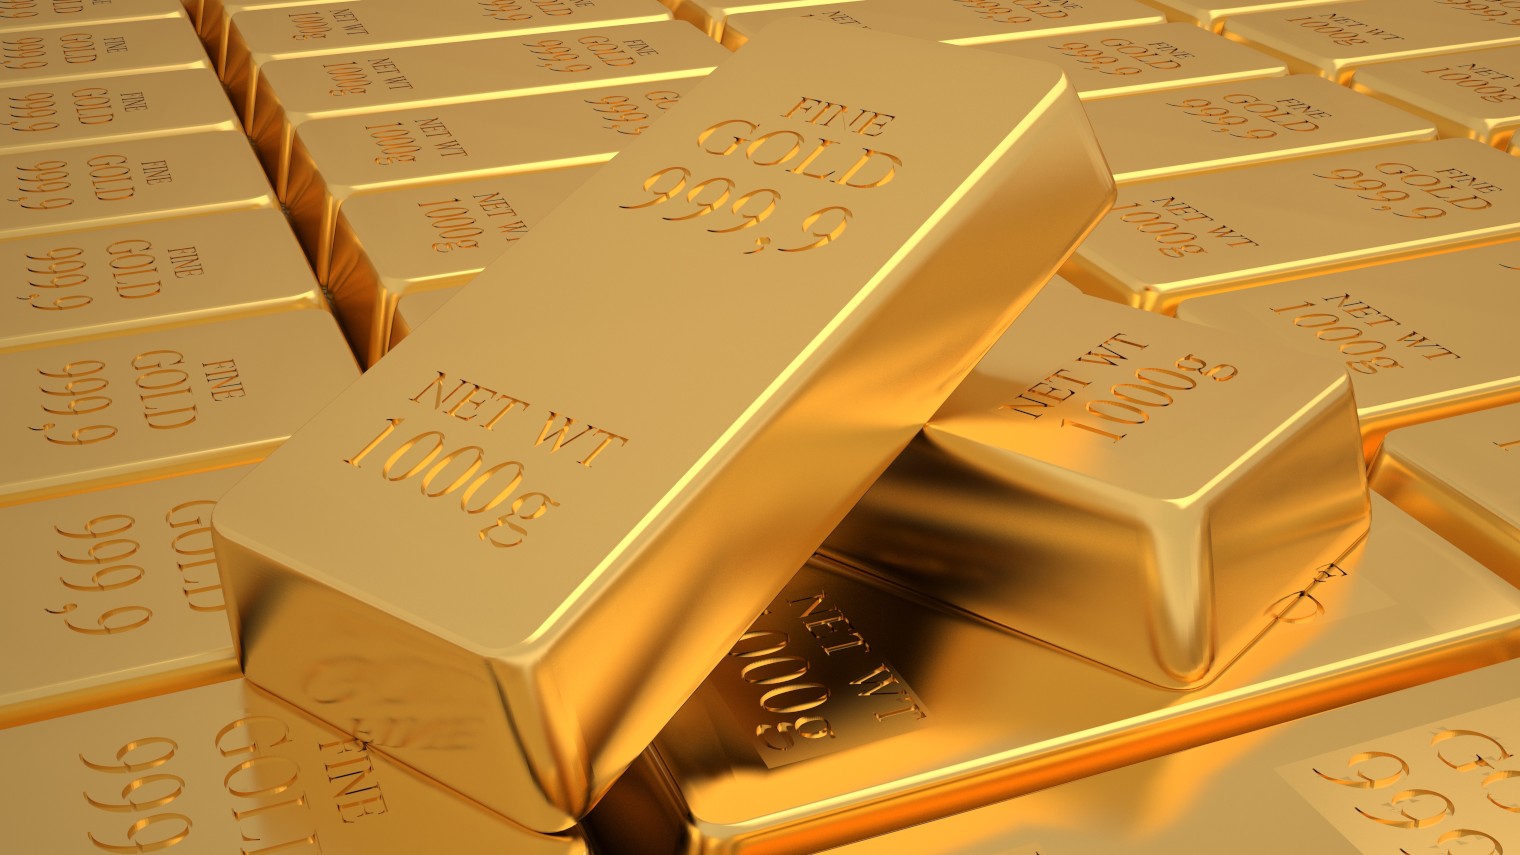 Quanto vale un lingotto d’oro? Ecco cosa sapere